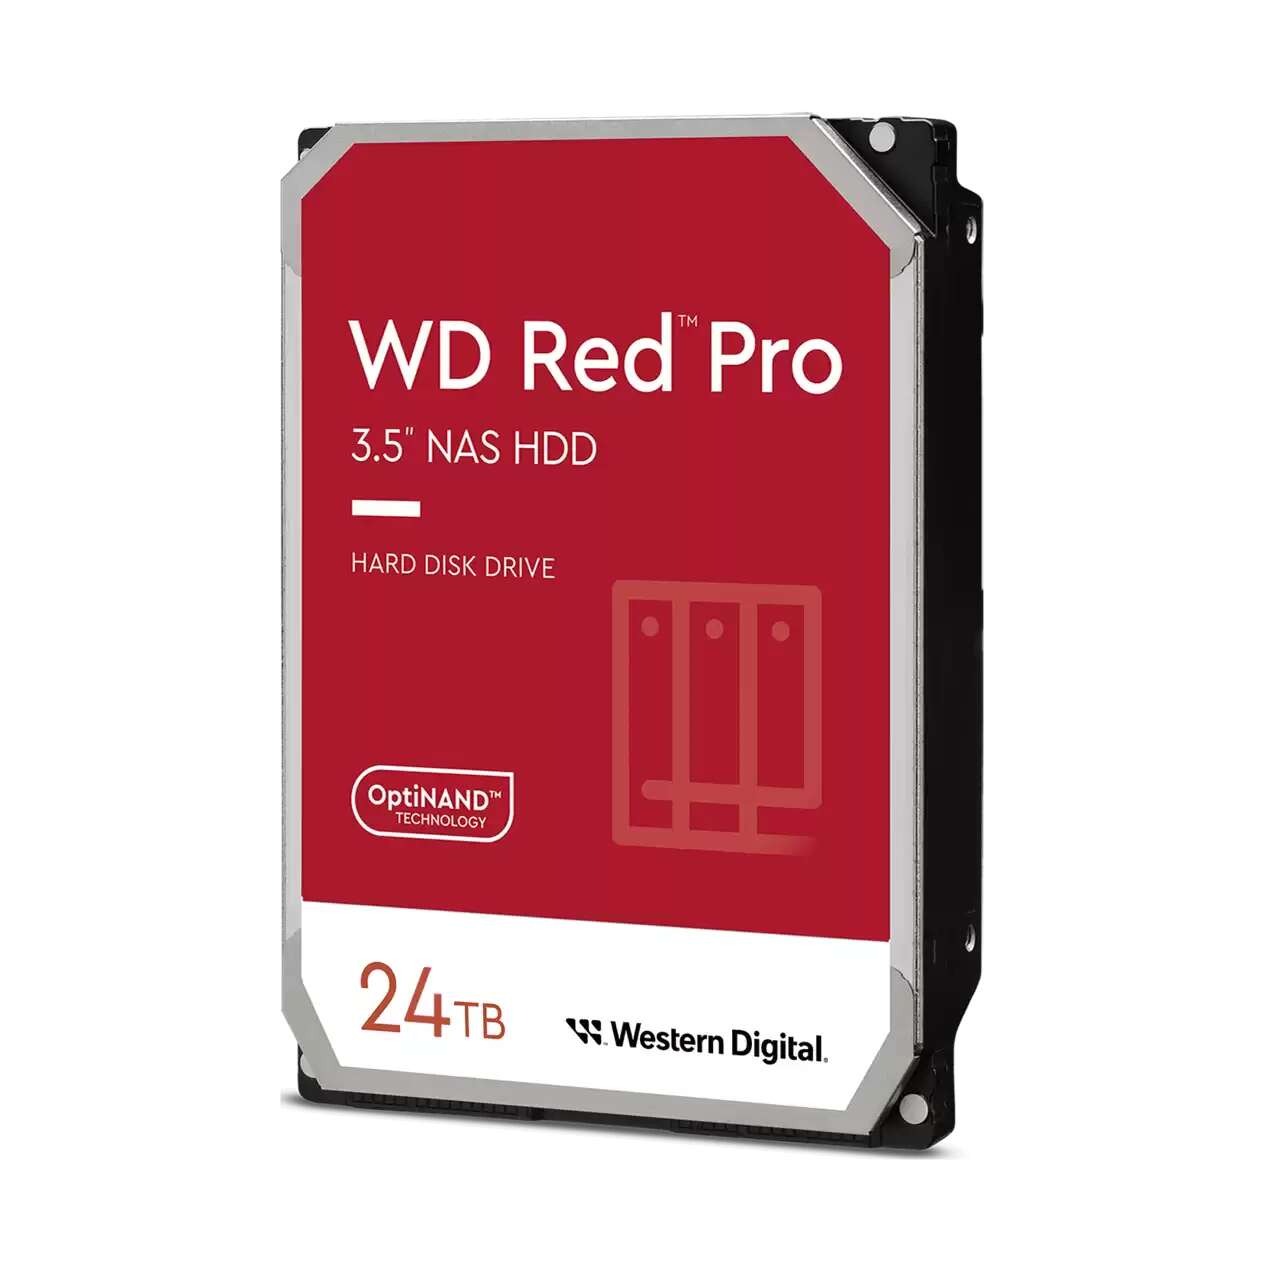 Western digital 24tb red pro sata3 3.5" nas hdd